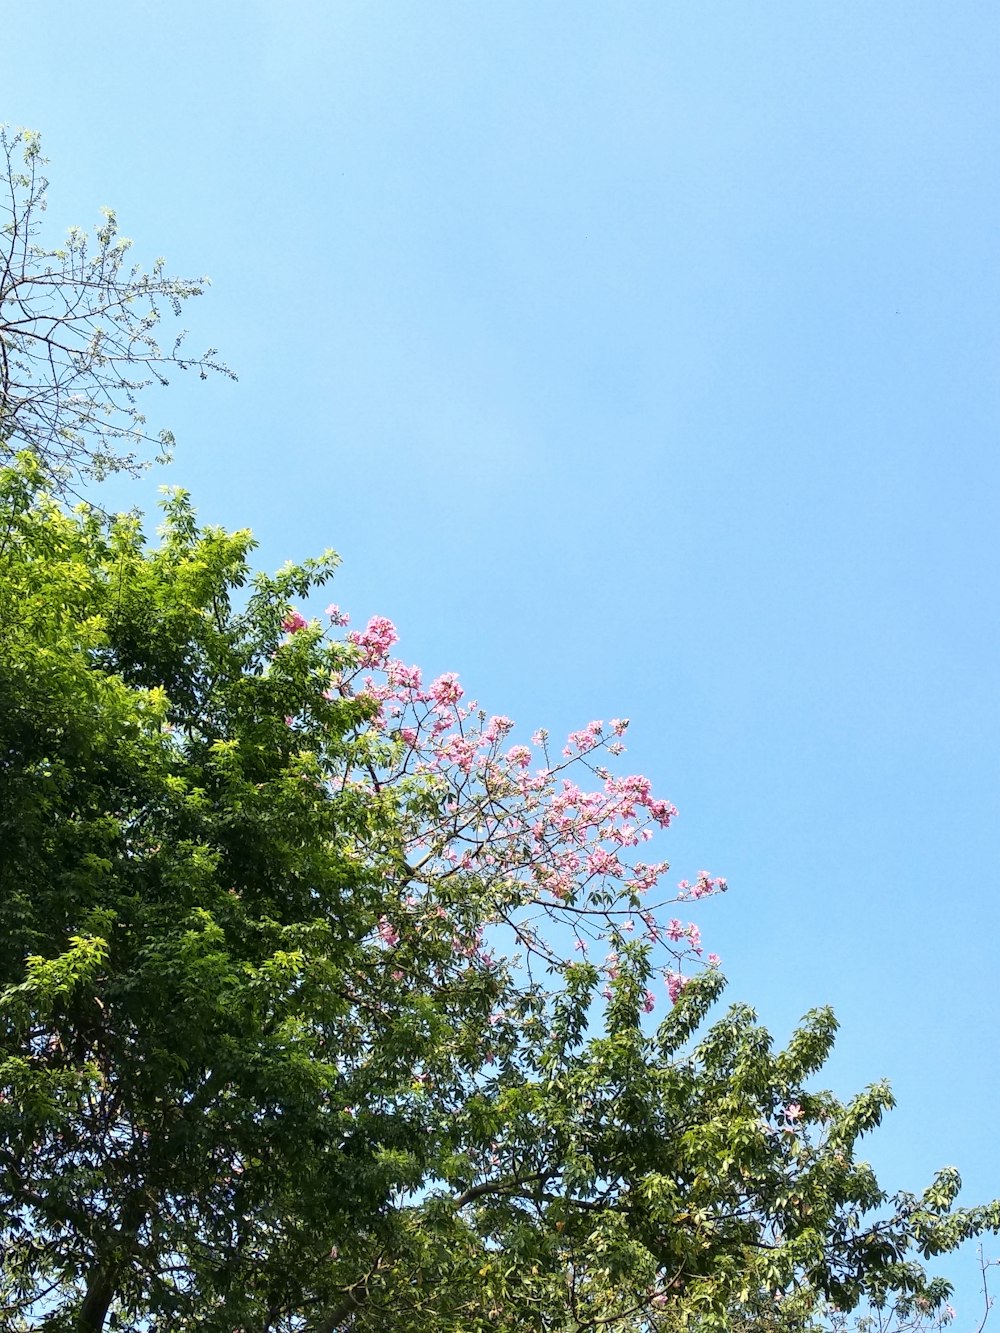 grünblättriger rosablättriger blühender Baum unter ruhigem blauem Himmel